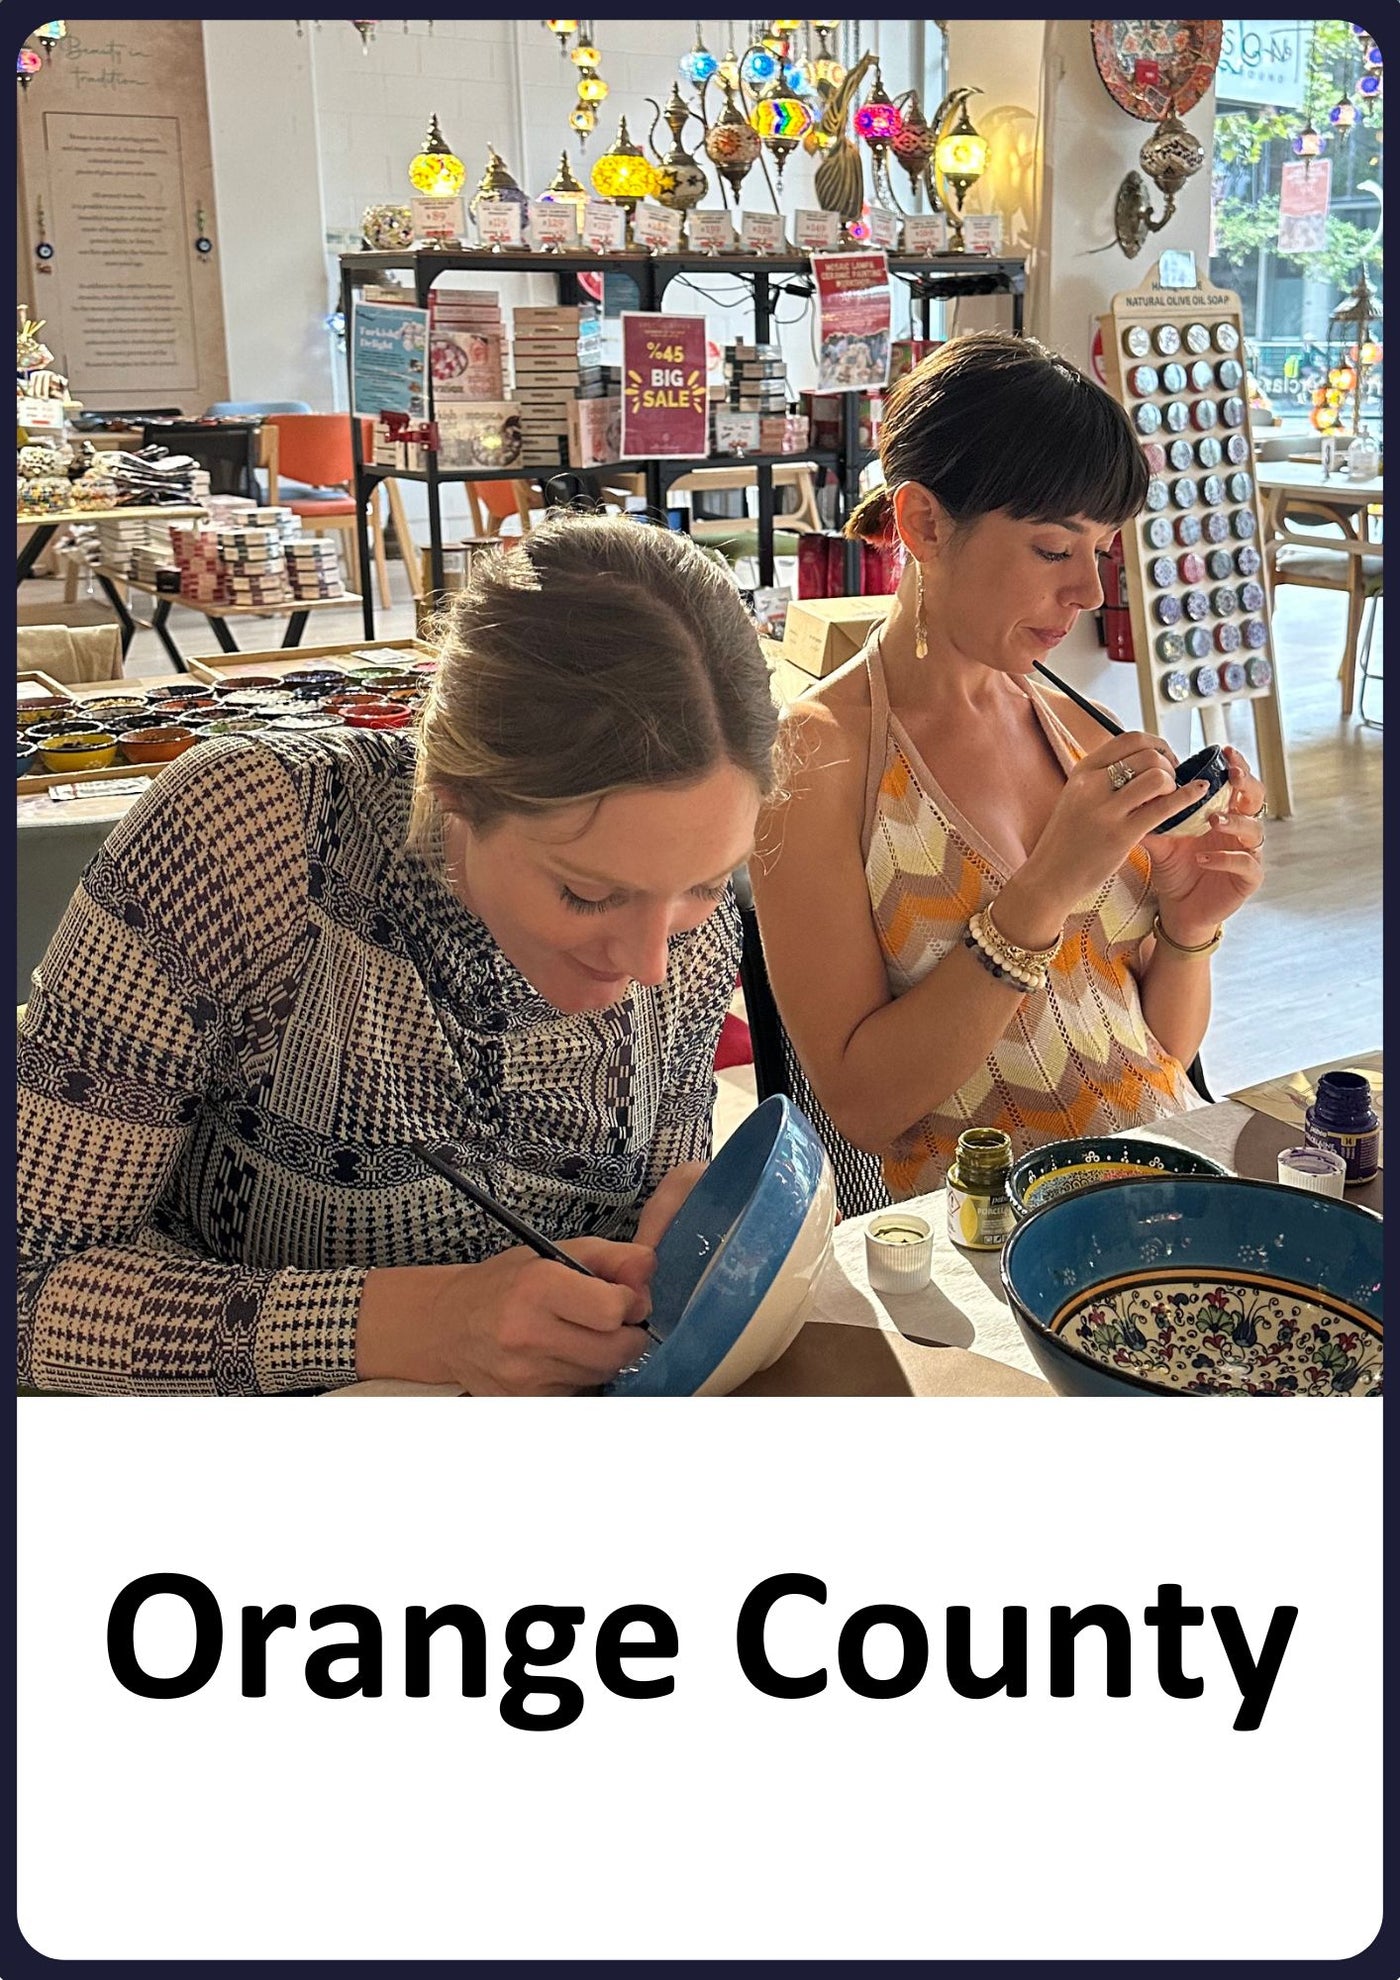 Ceramic Painting Classes in Orange County